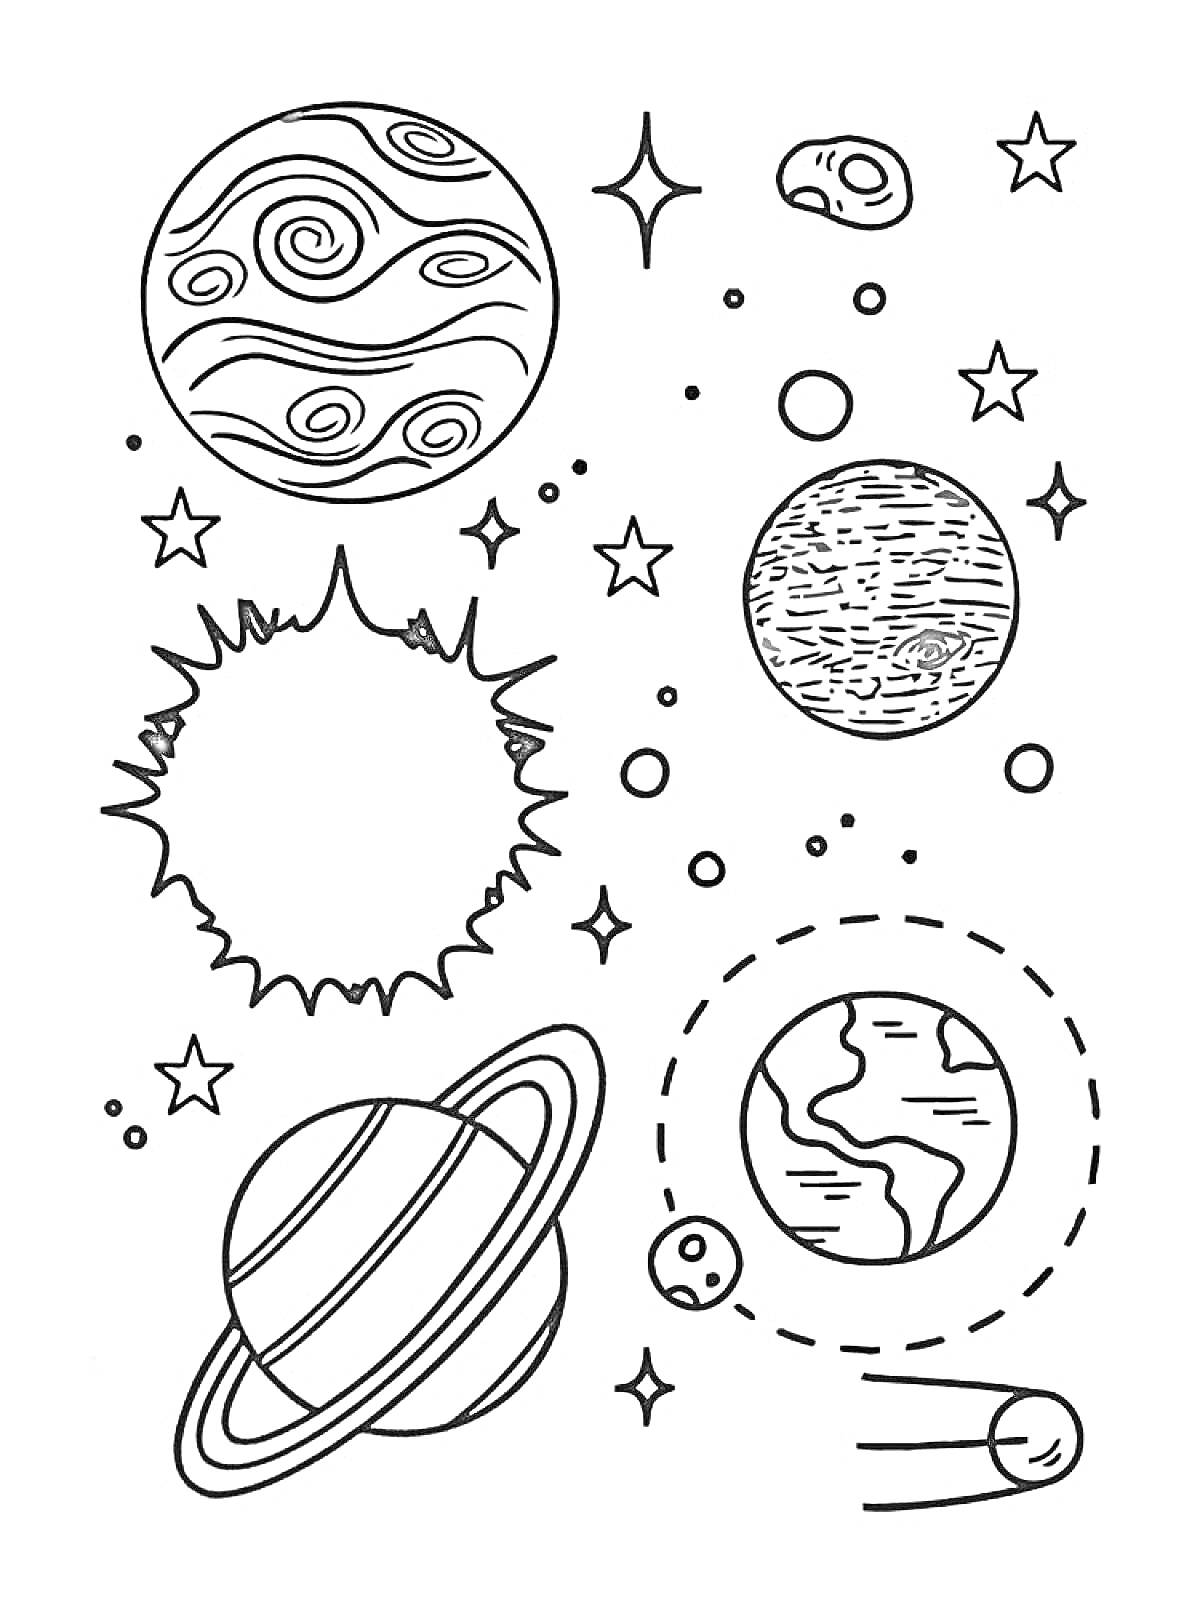 Планеты с кольцами, звёзды, Солнце, планета с континентами и океанами, круглая планета с полосами, метеориты, падающая звезда